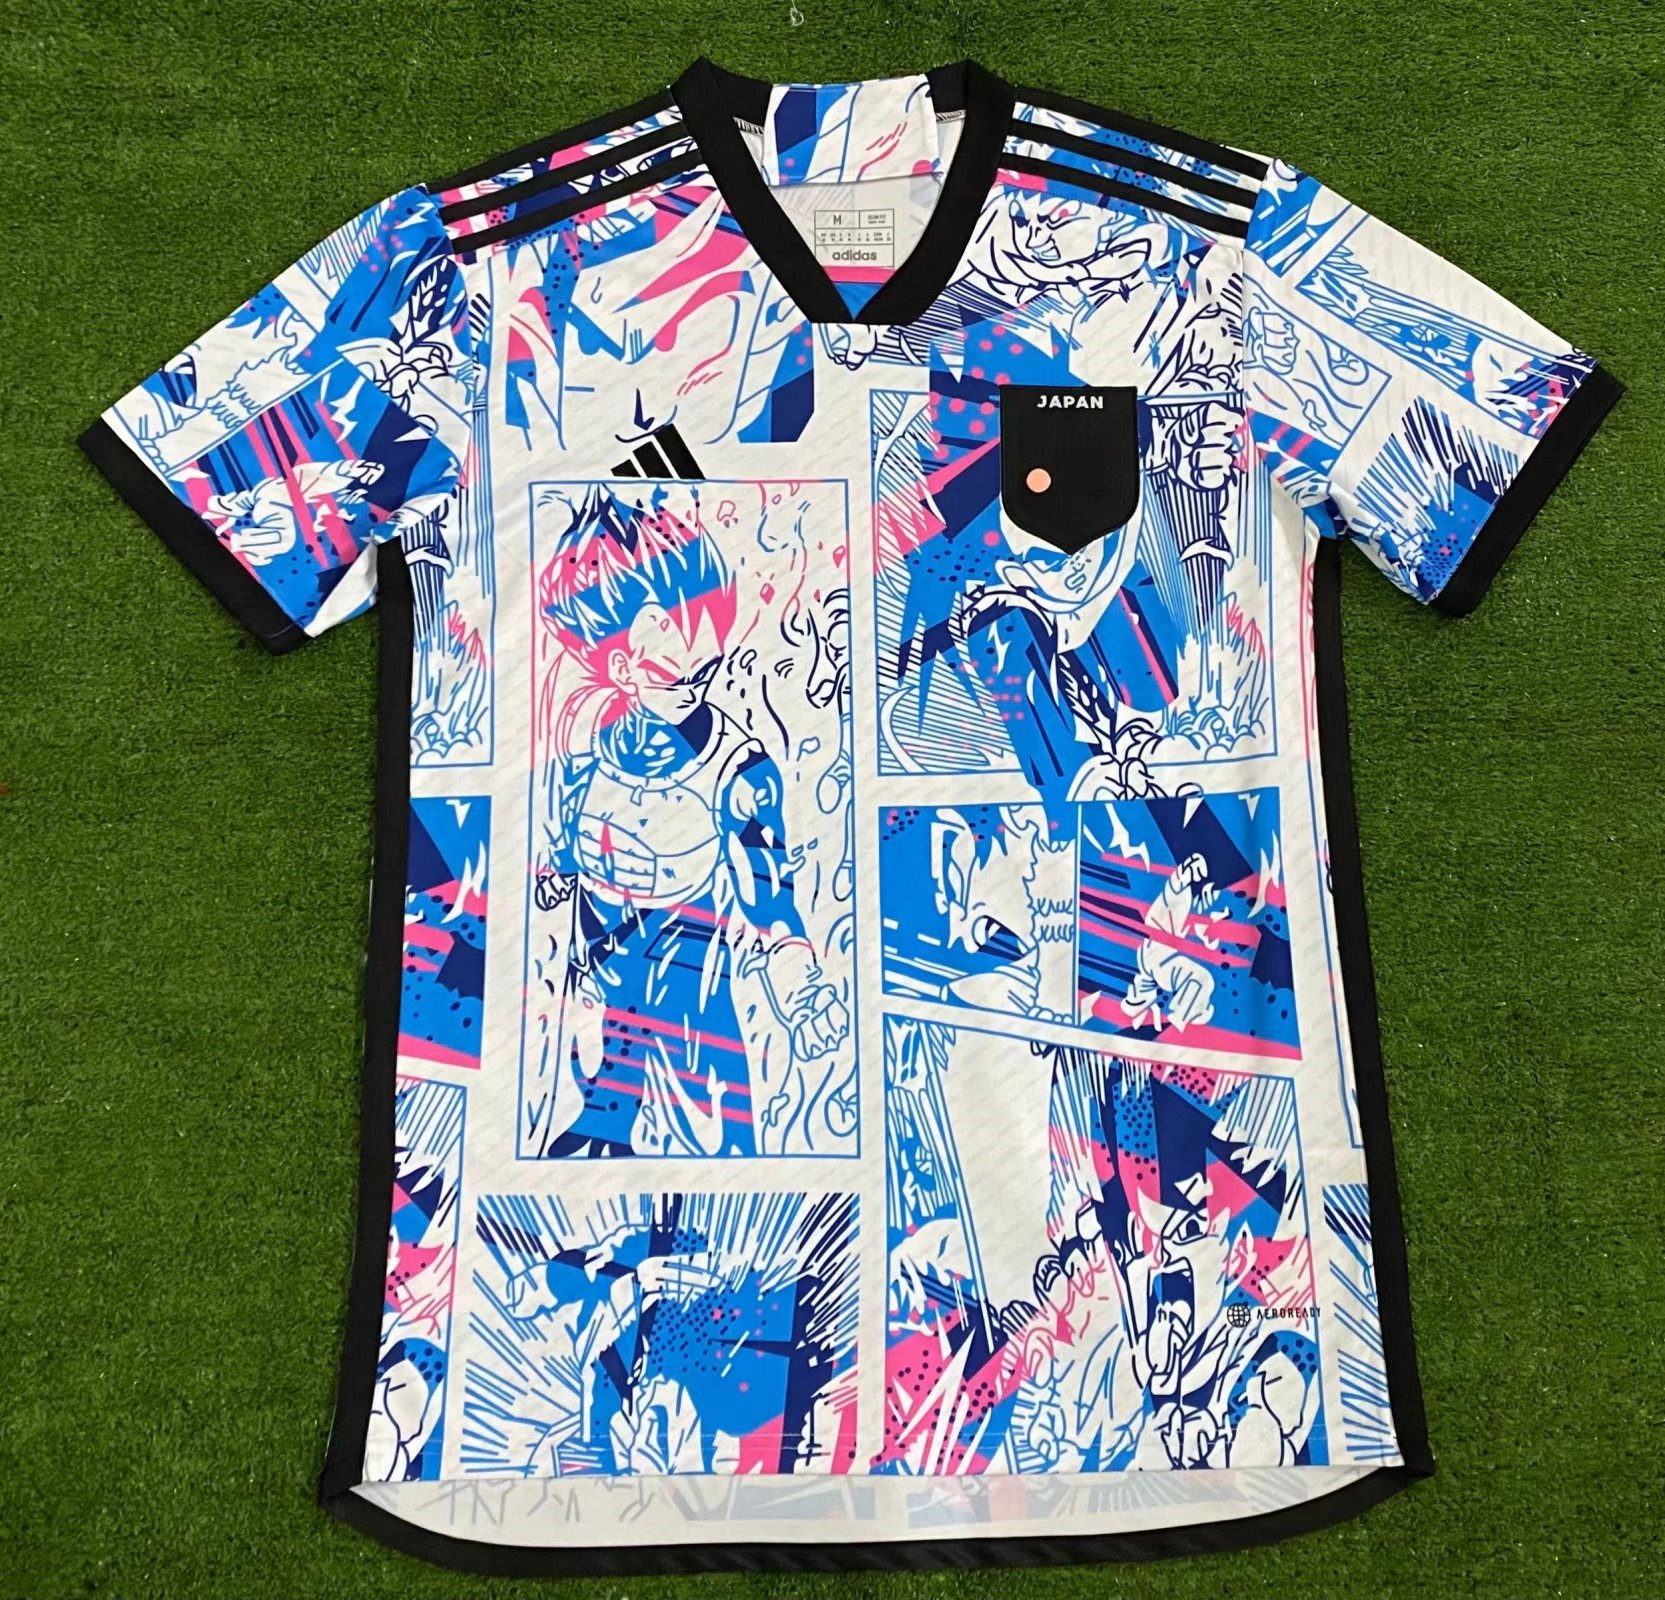 Adidas Football Japan National Team 2020 Home Replica Uniform 